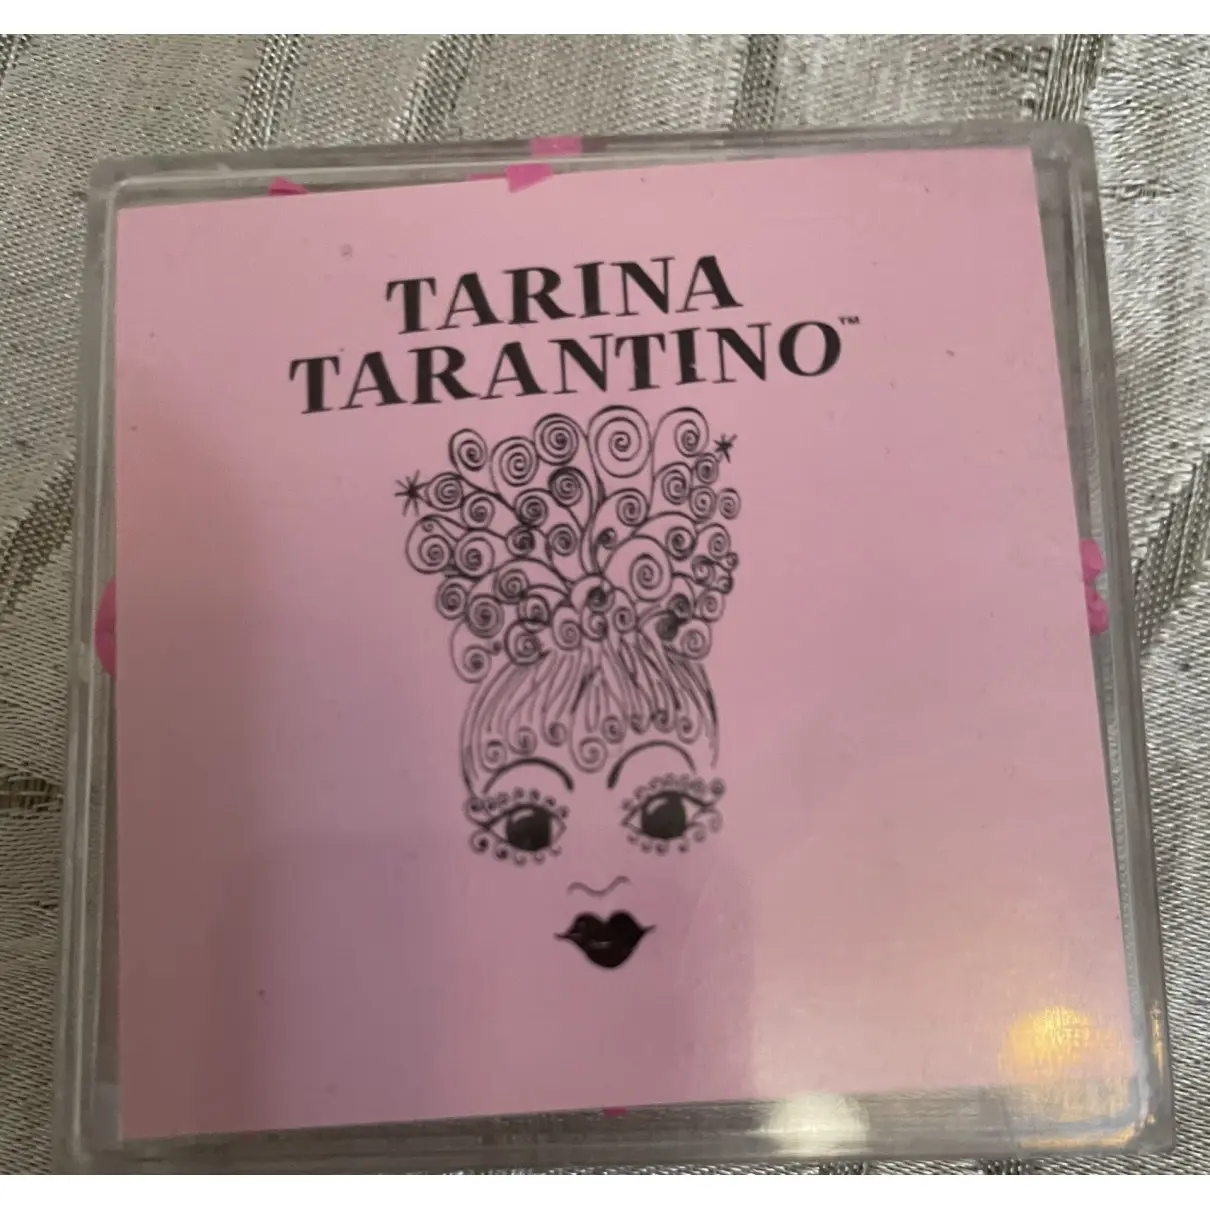 Buy TARINA TARANTINO Crystal hair accessory online